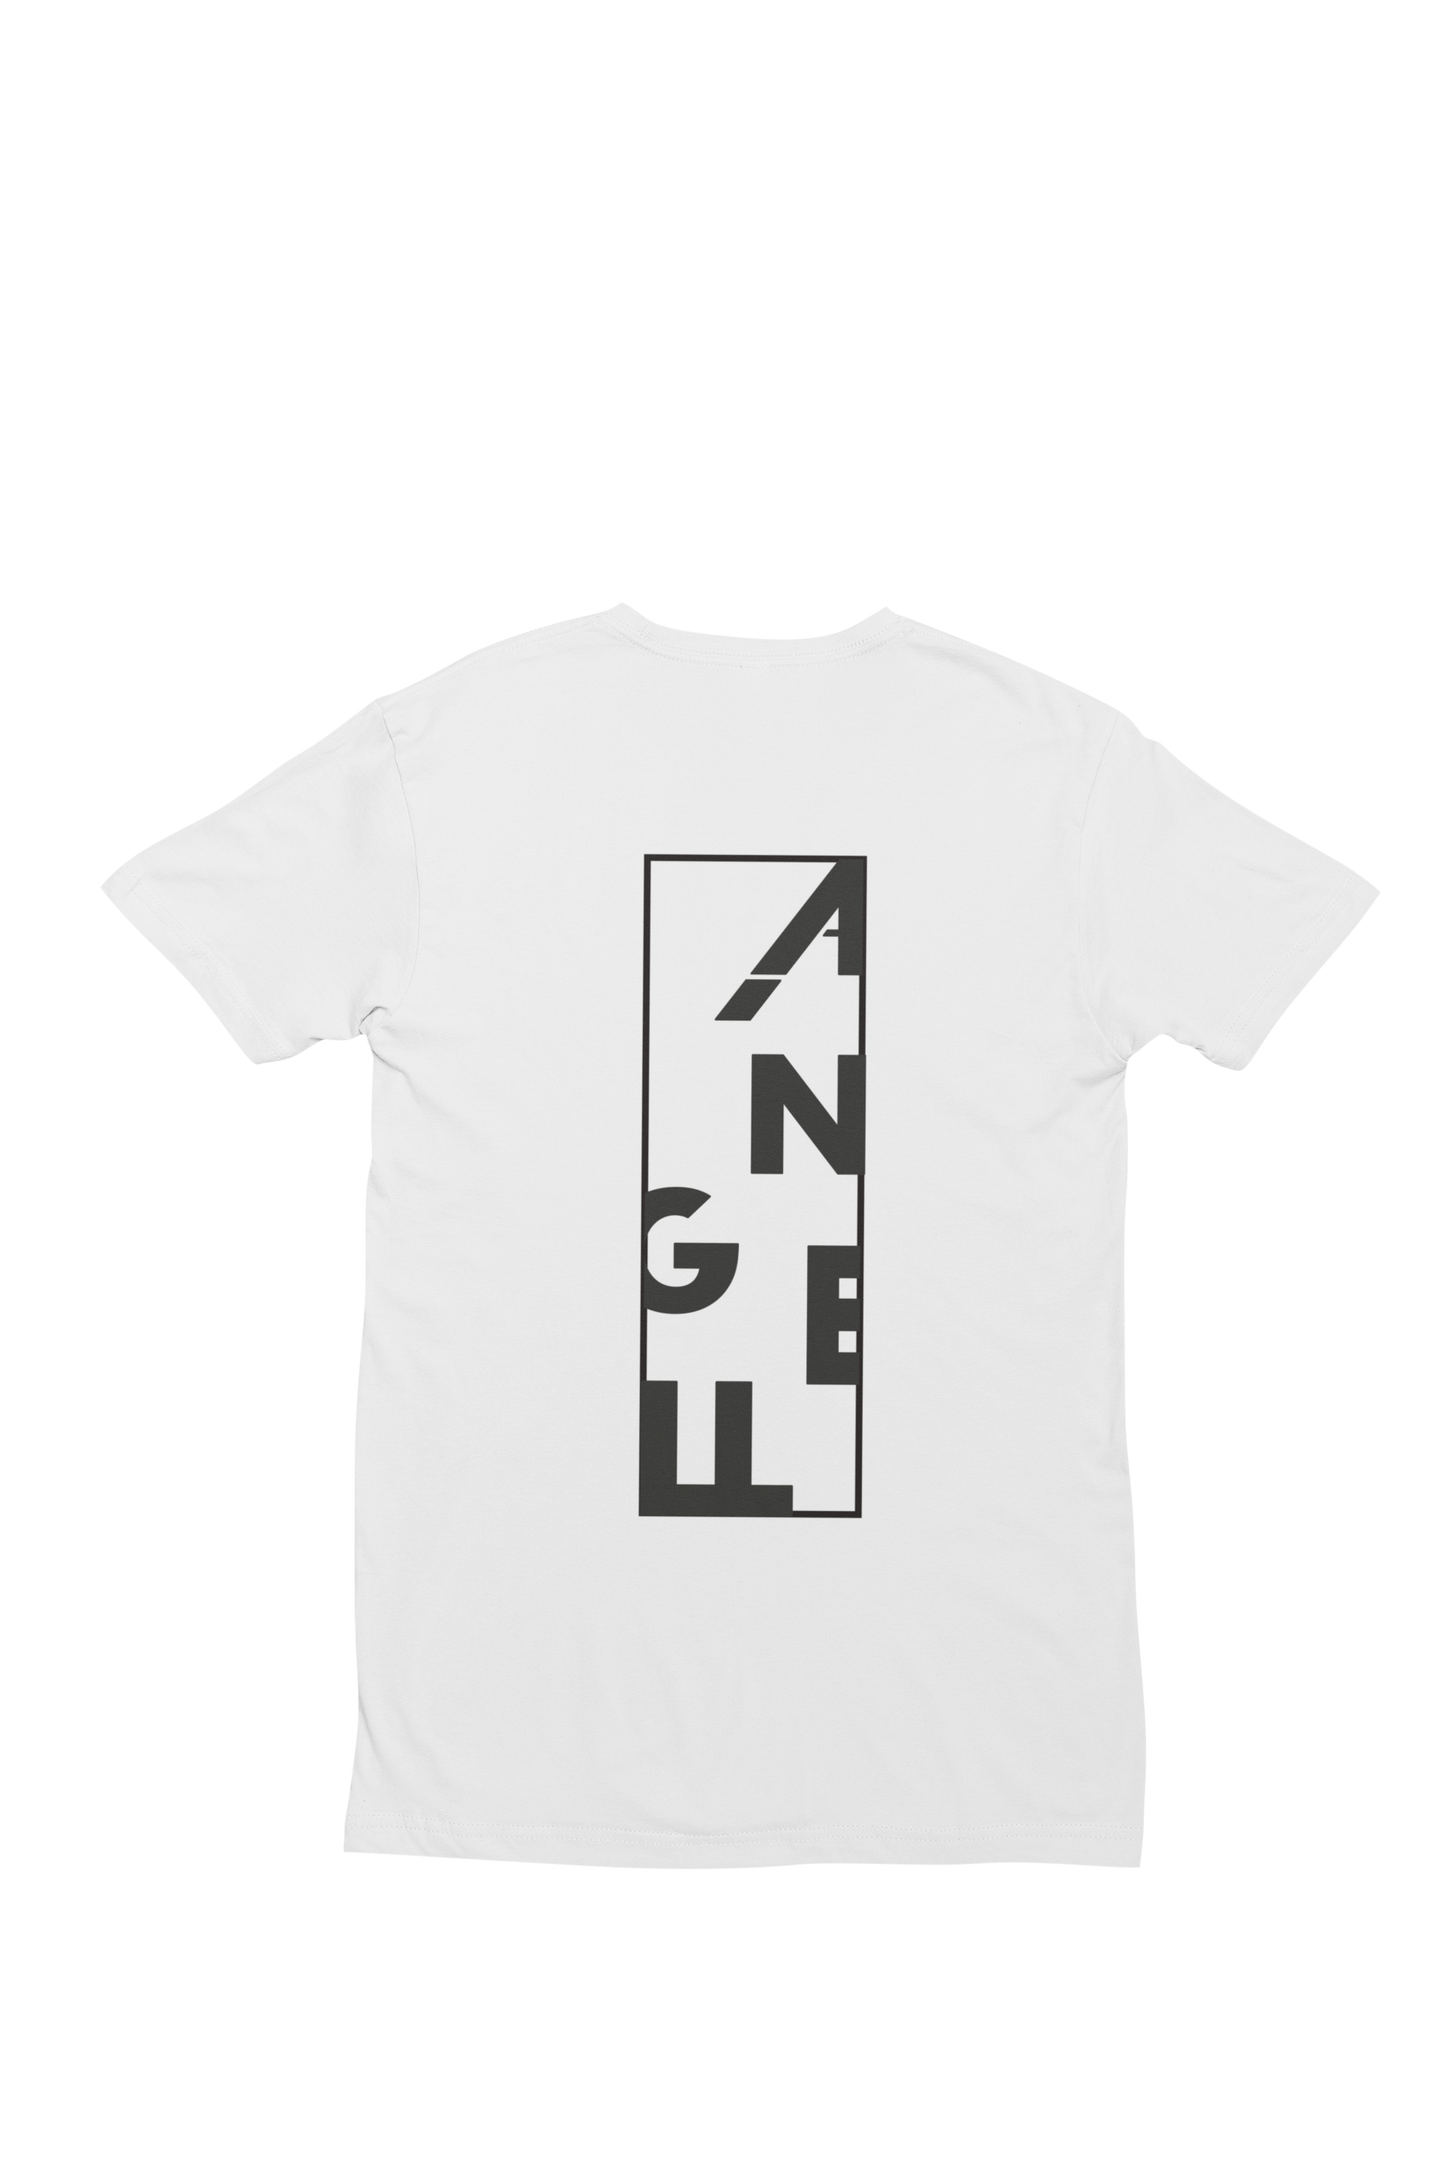 ANGELL Akademie - Basic T-Shirt (weiß)